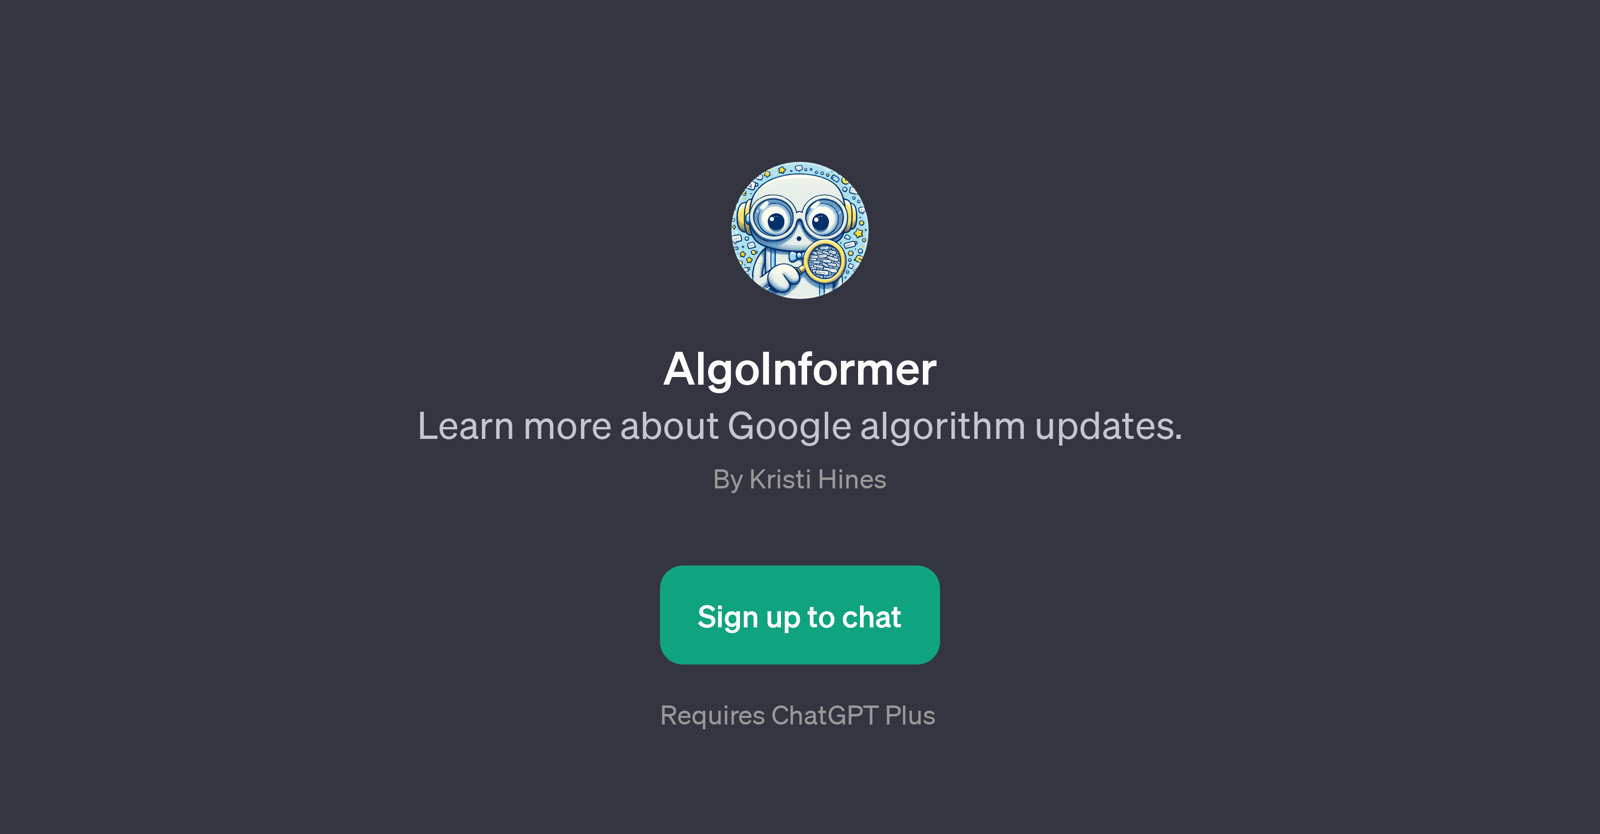 AlgoInformer website